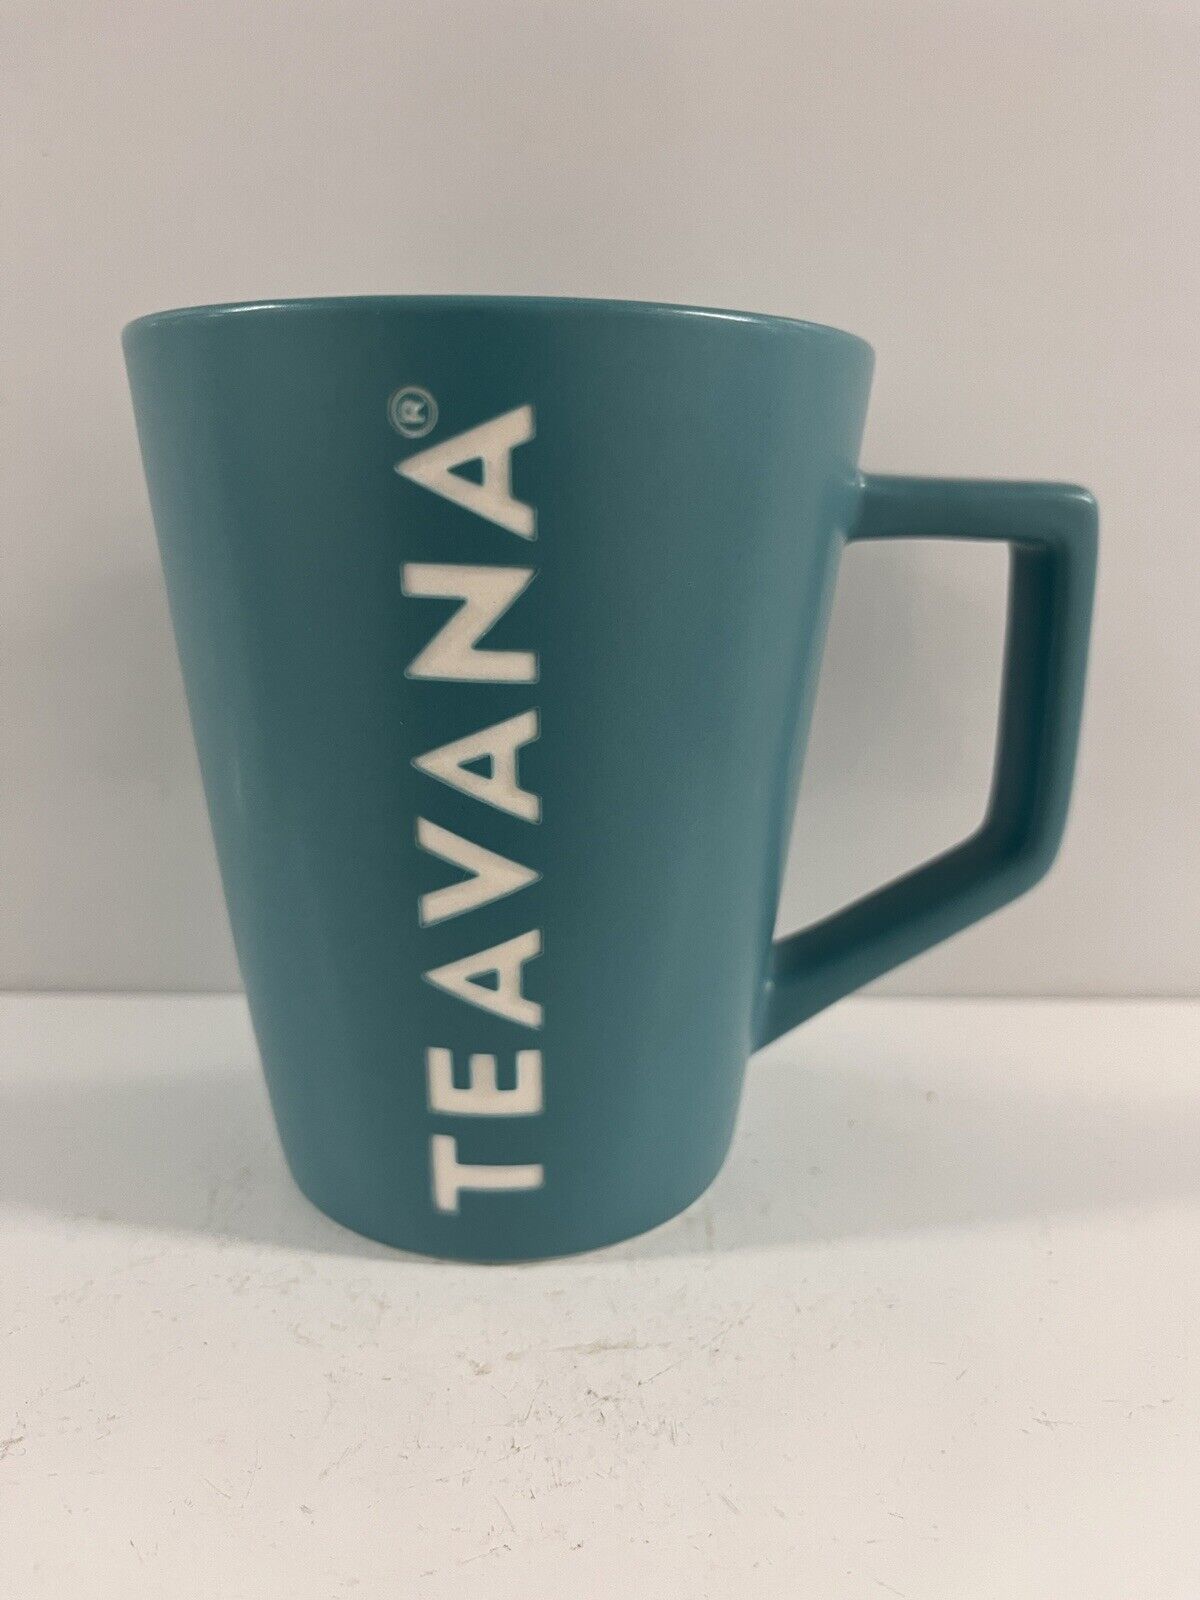 Teavana Tea Textured TEAVANA Mug Cup 12 oz Teal Starbucks